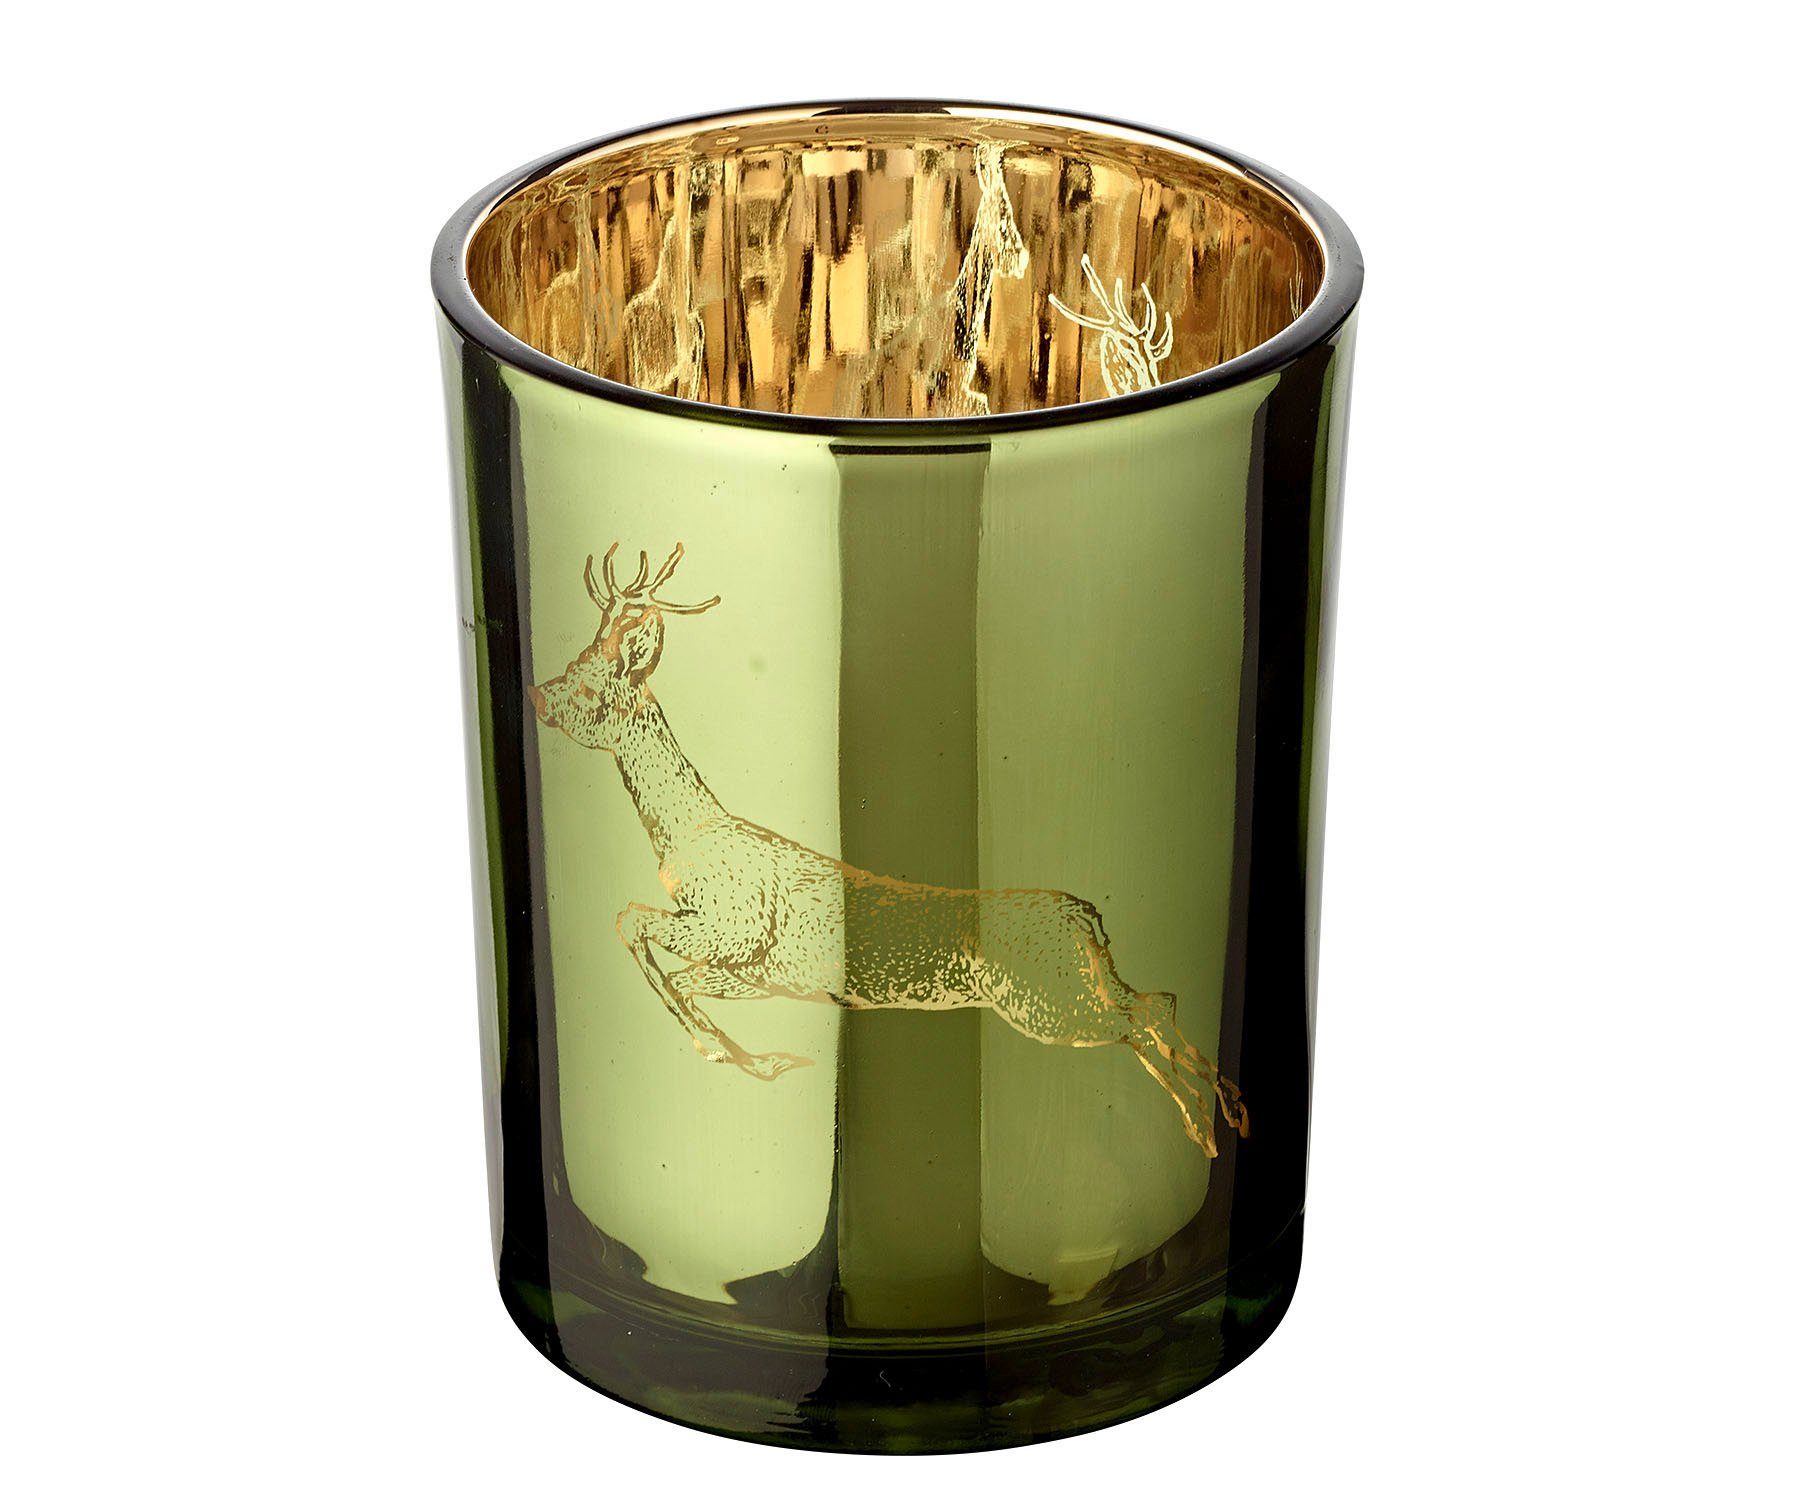 EDZARD Windlicht Sammy, Kerzenglas-Set für Teelichter mit Hirsch-Motiv in Gold-Optik, Kerzenhalter für Teelicht und Maxi-Teelicht, Höhe 13 cm, Ø 10 cm